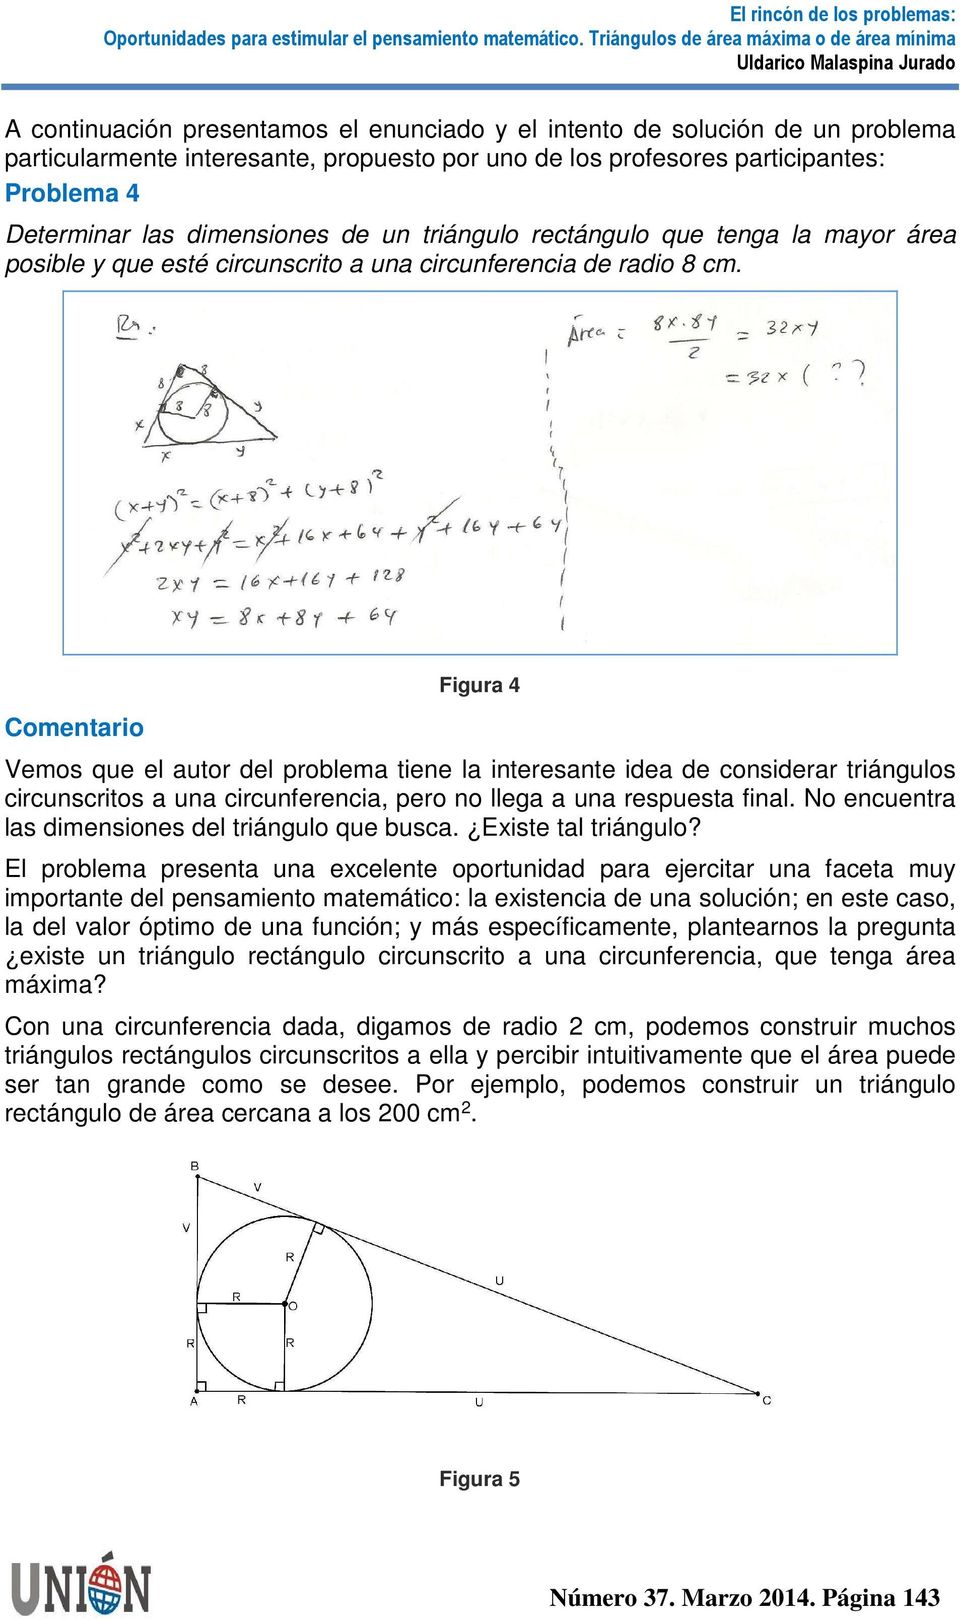 Comentario Figura 4 Vemos que el autor del problema tiene la interesante idea de considerar triángulos circunscritos a una circunferencia, pero no llega a una respuesta final.